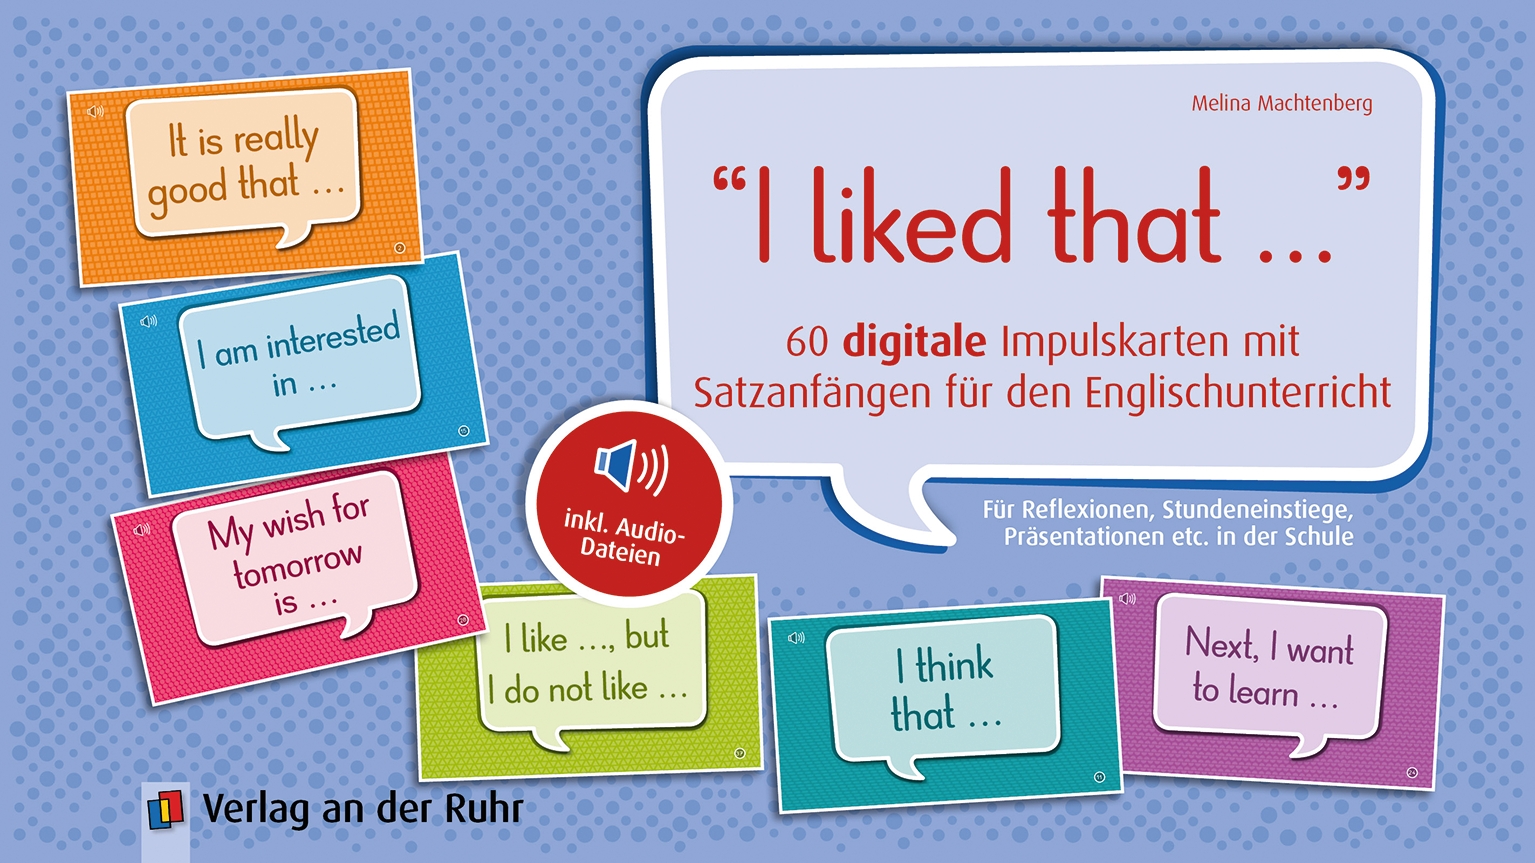 "I liked that …“ 60 digitale Impulskarten mit Satzanfängen für den Englischunterricht, inkl. Audio-Dateien – Pro-Lizenz – Online